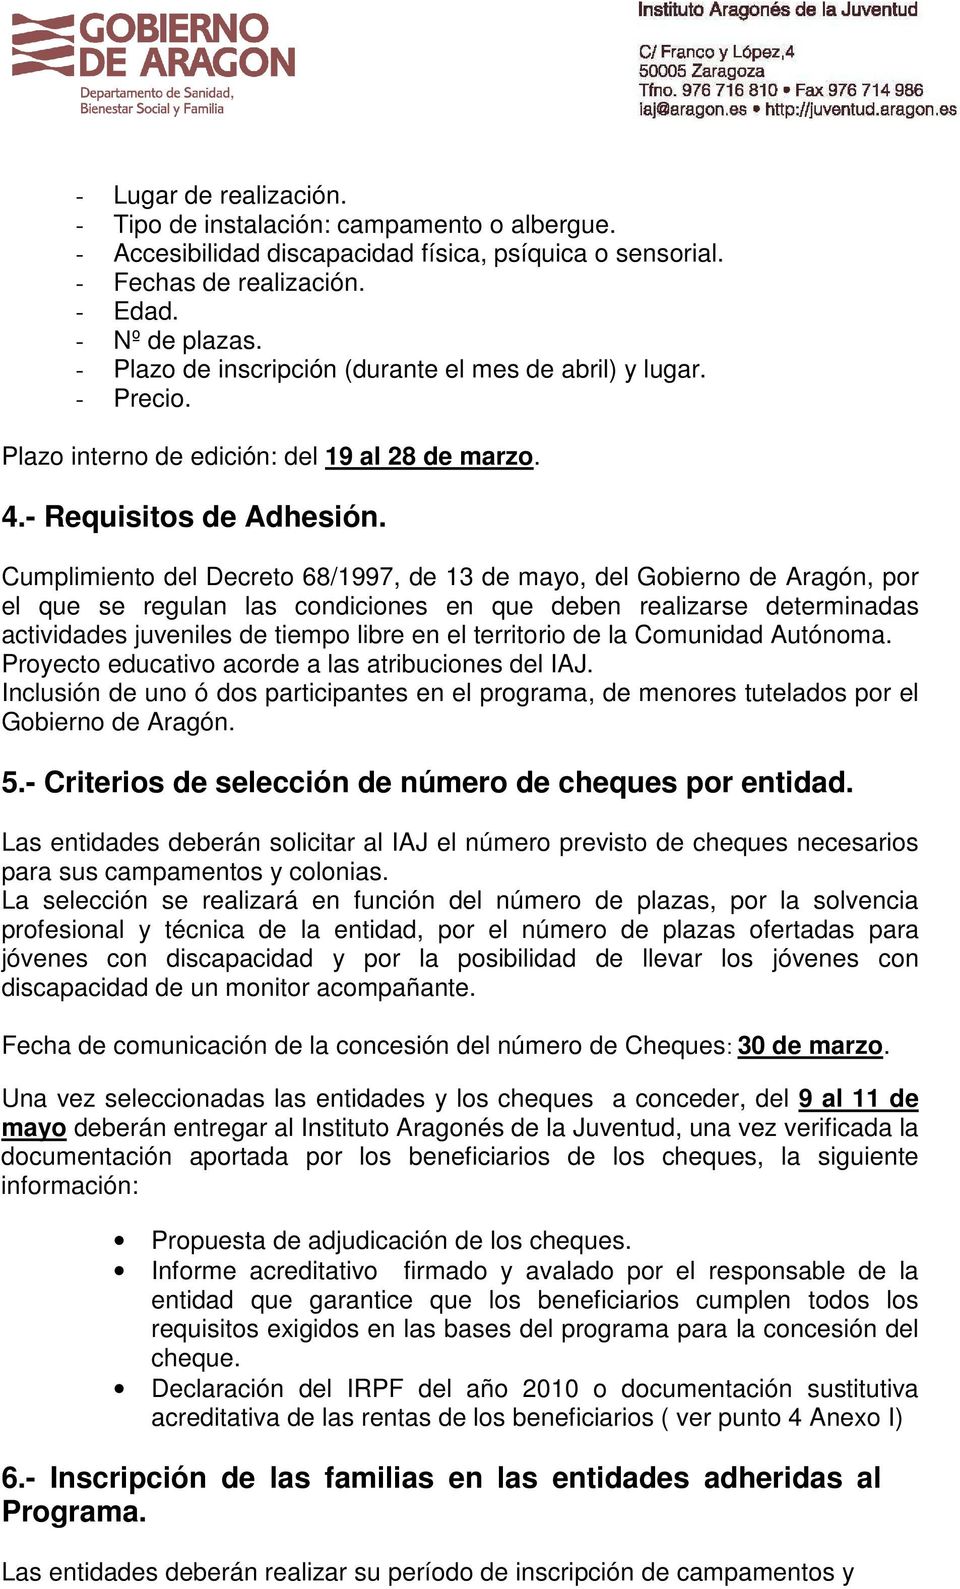 Cumplimiento del Decreto 68/1997, de 13 de mayo, del Gobierno de Aragón, por el que se regulan las condiciones en que deben realizarse determinadas actividades juveniles de tiempo libre en el